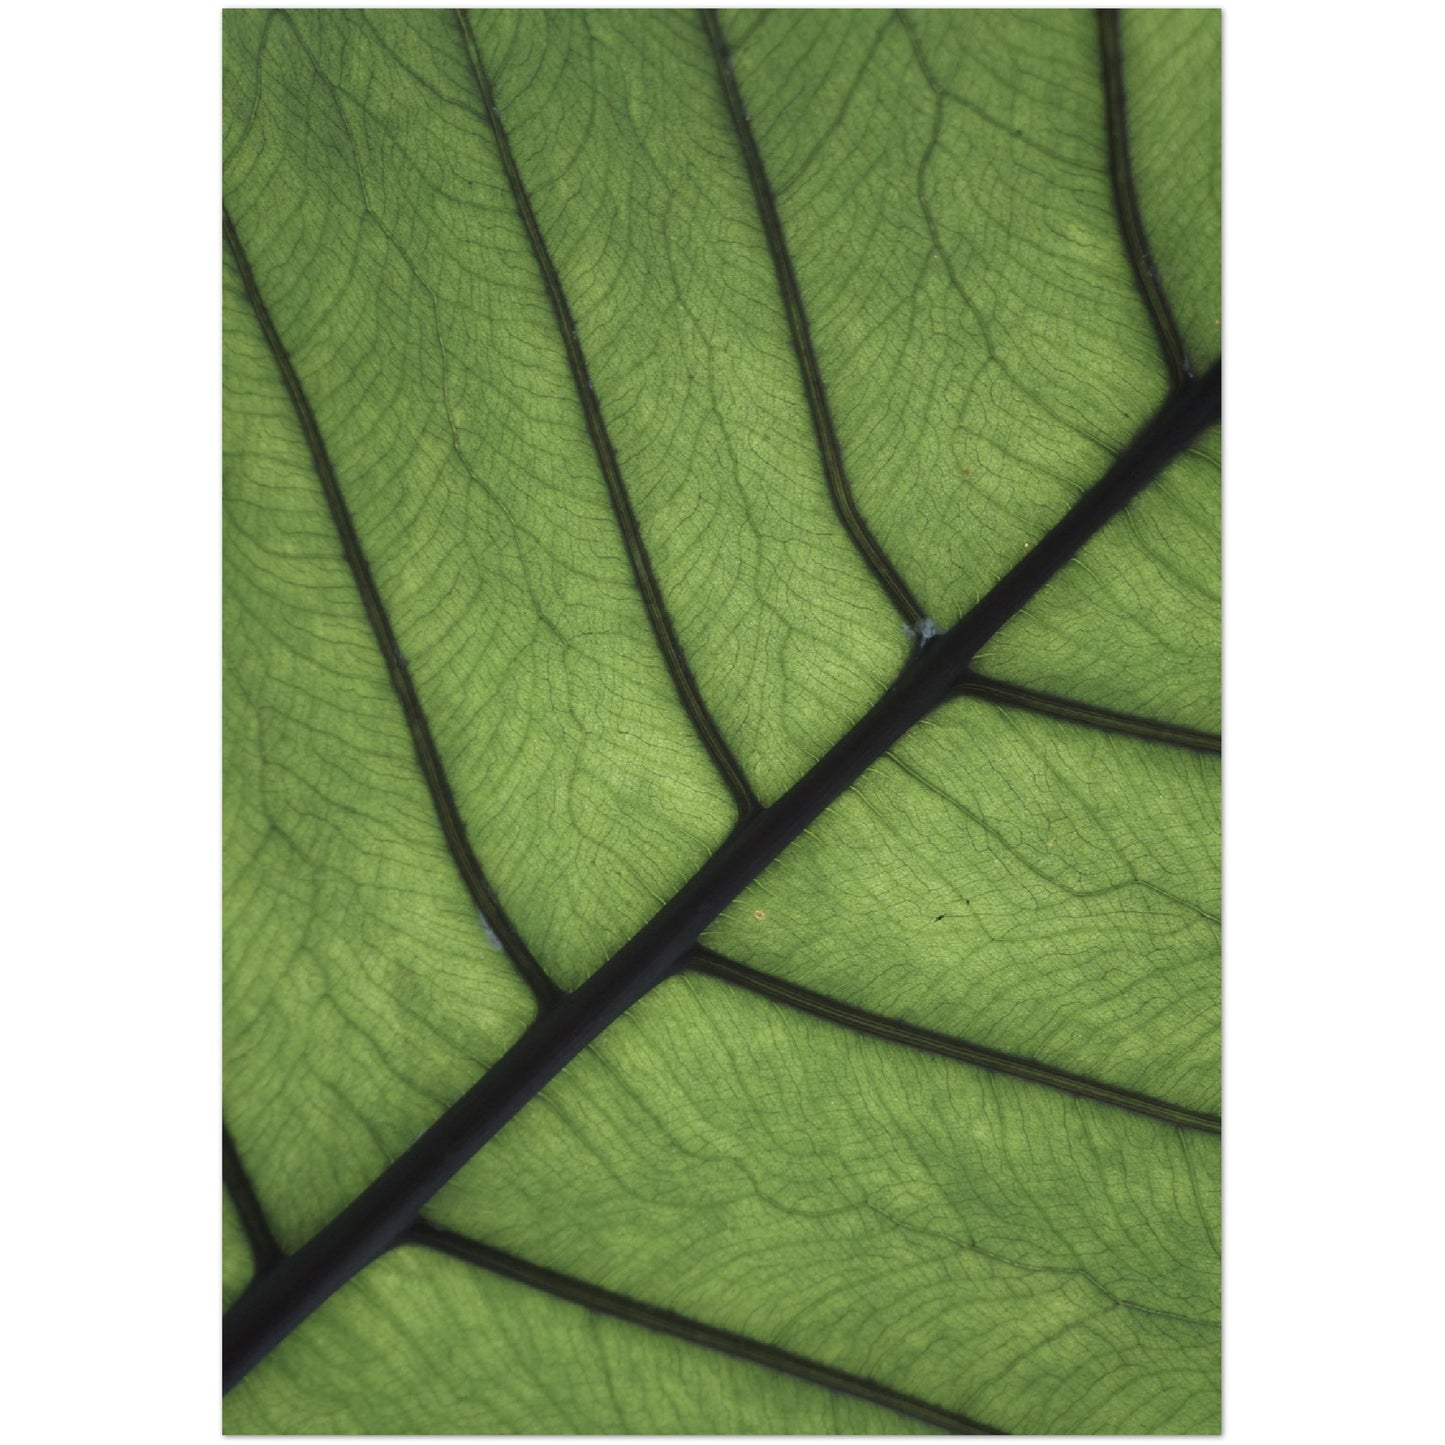 Leaf Texture Print